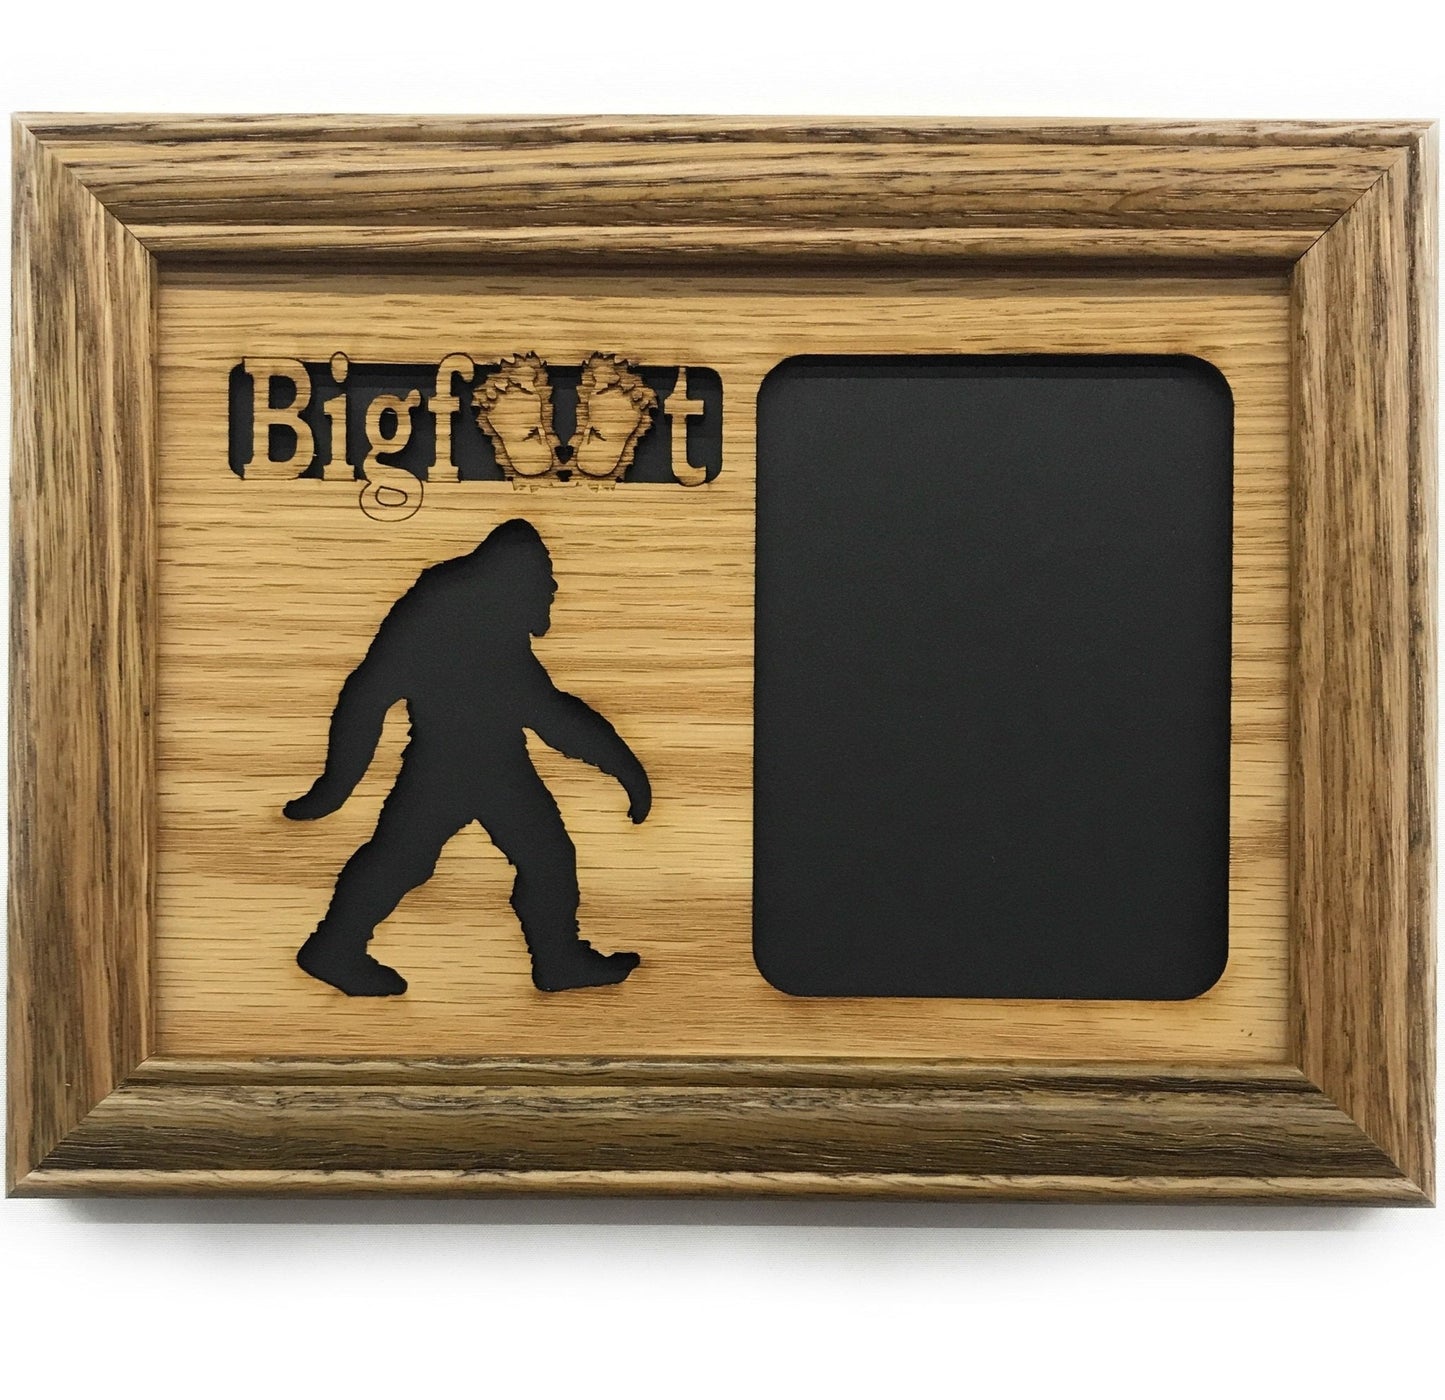 Bigfoot Picture Frame - Bigfoot Picture Frame - Legacy Images - Picture Frames - Legacy Images - Picture Frames